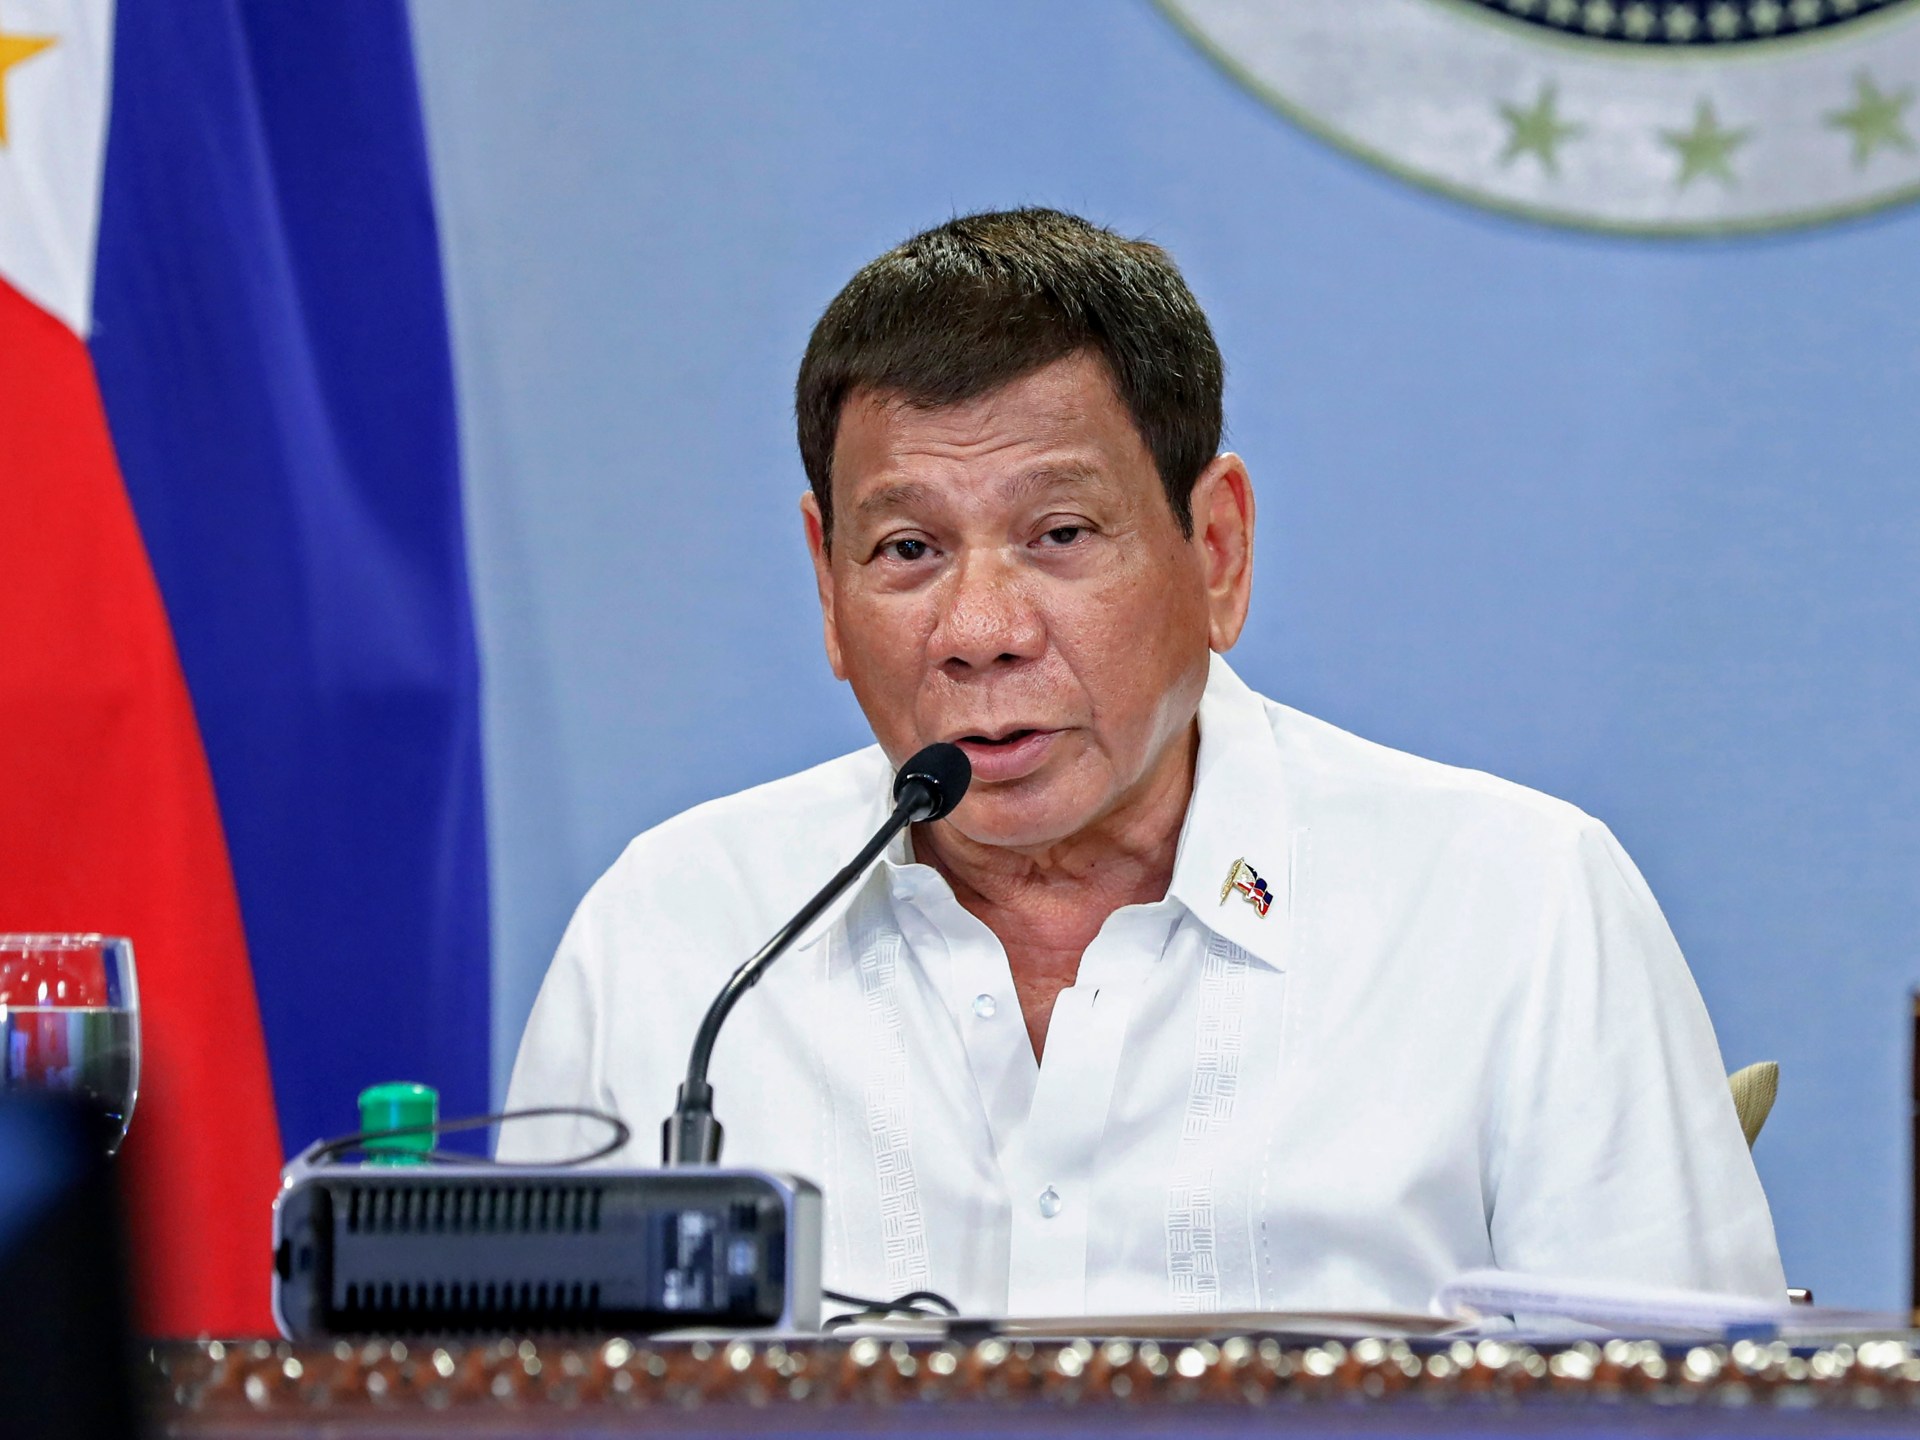 ICC menolak upaya untuk memblokir penyelidikan perang narkoba Duterte |  Berita Hak Asasi Manusia